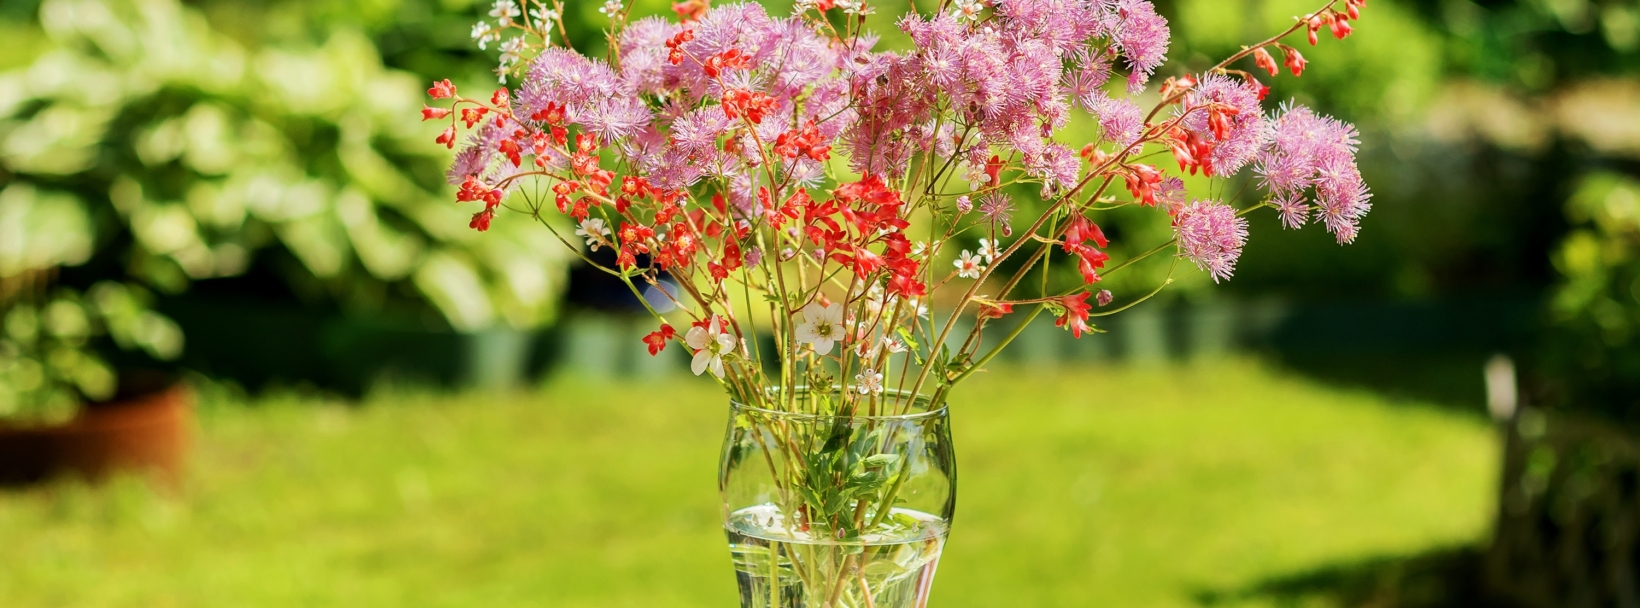 jak udekorować wysoki szklany wazon